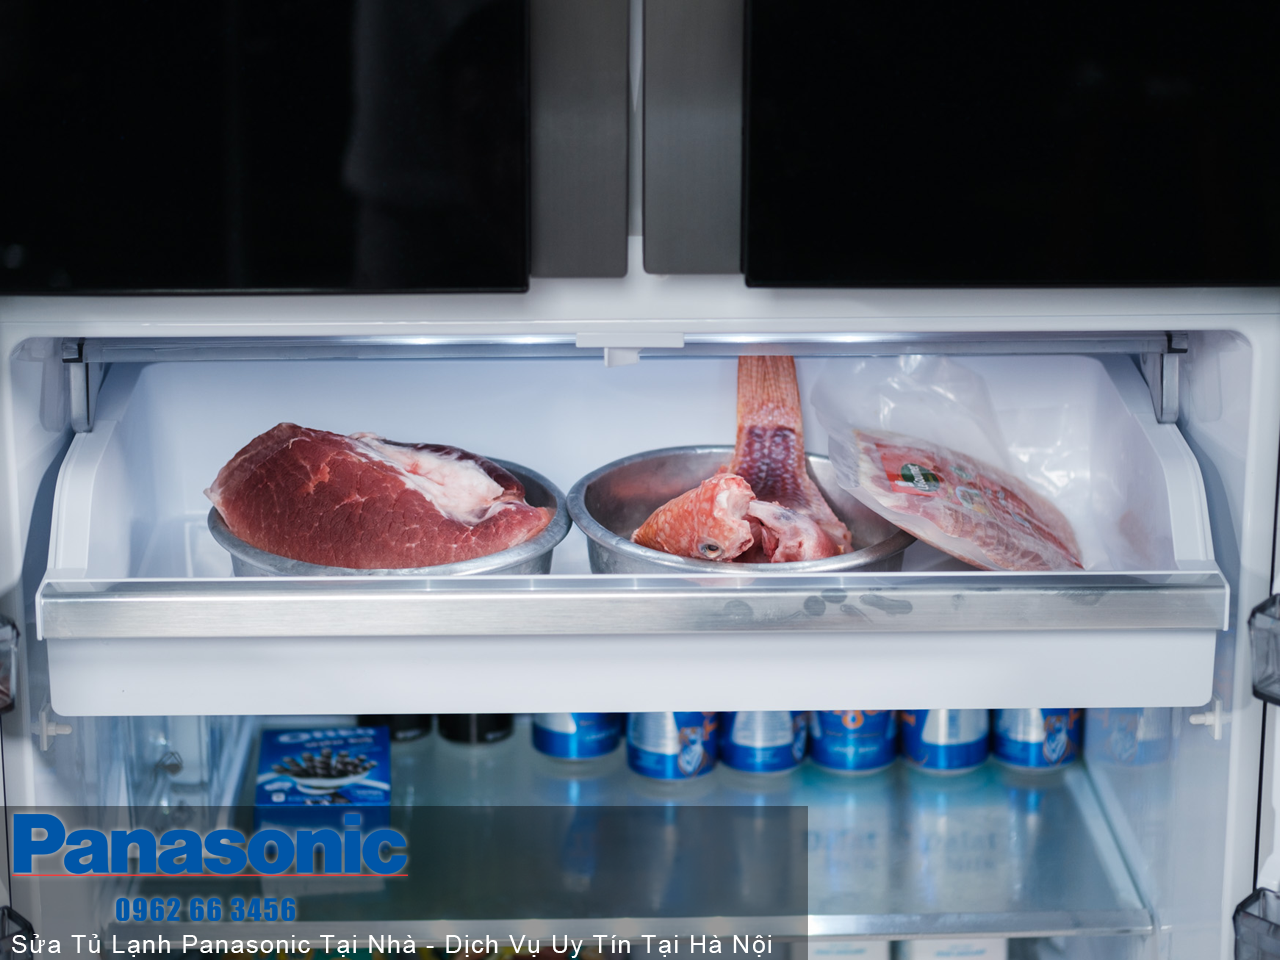 Nếu tủ lạnh Panasonic của bạn có dấu hiệu ngưng lạnh, hãy nhanh chóng liên hệ ngay với dịch vụ sửa tủ lạnh Panasonic tại nhà của chúng tôi để được hỗ trợ